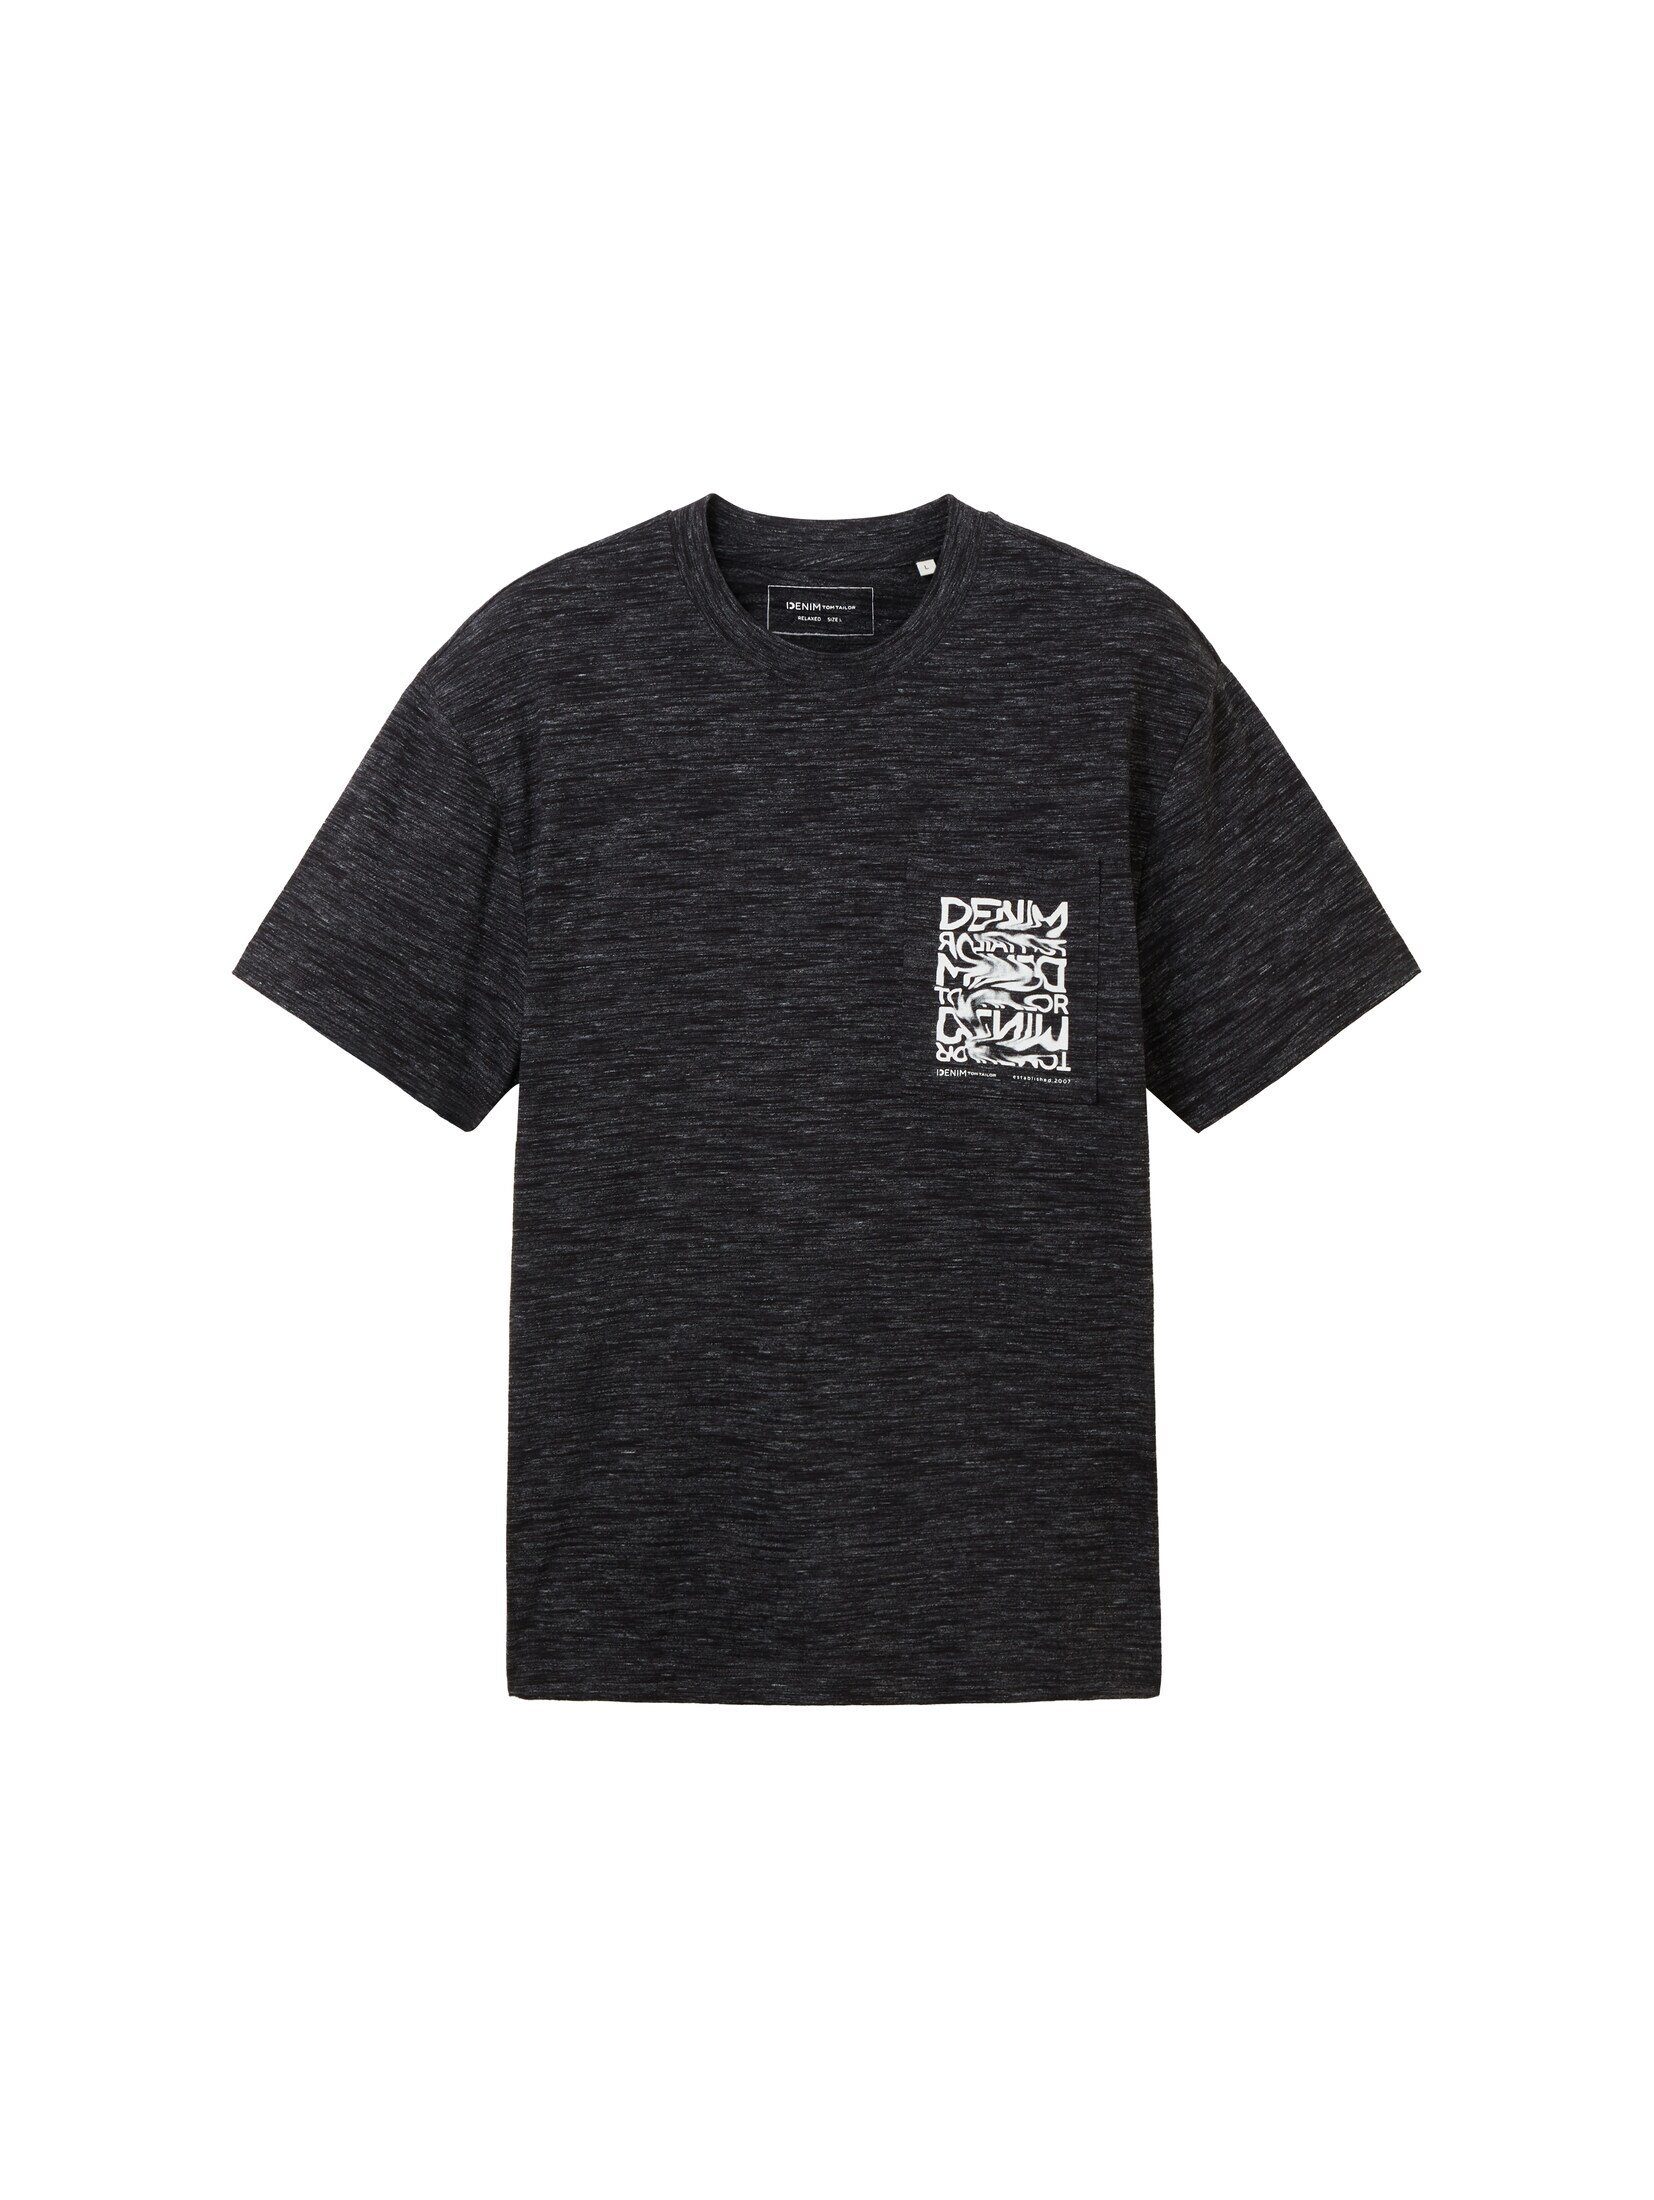 TOM TAILOR Denim T-Shirt T-Shirt black in dye Optik new space Melange